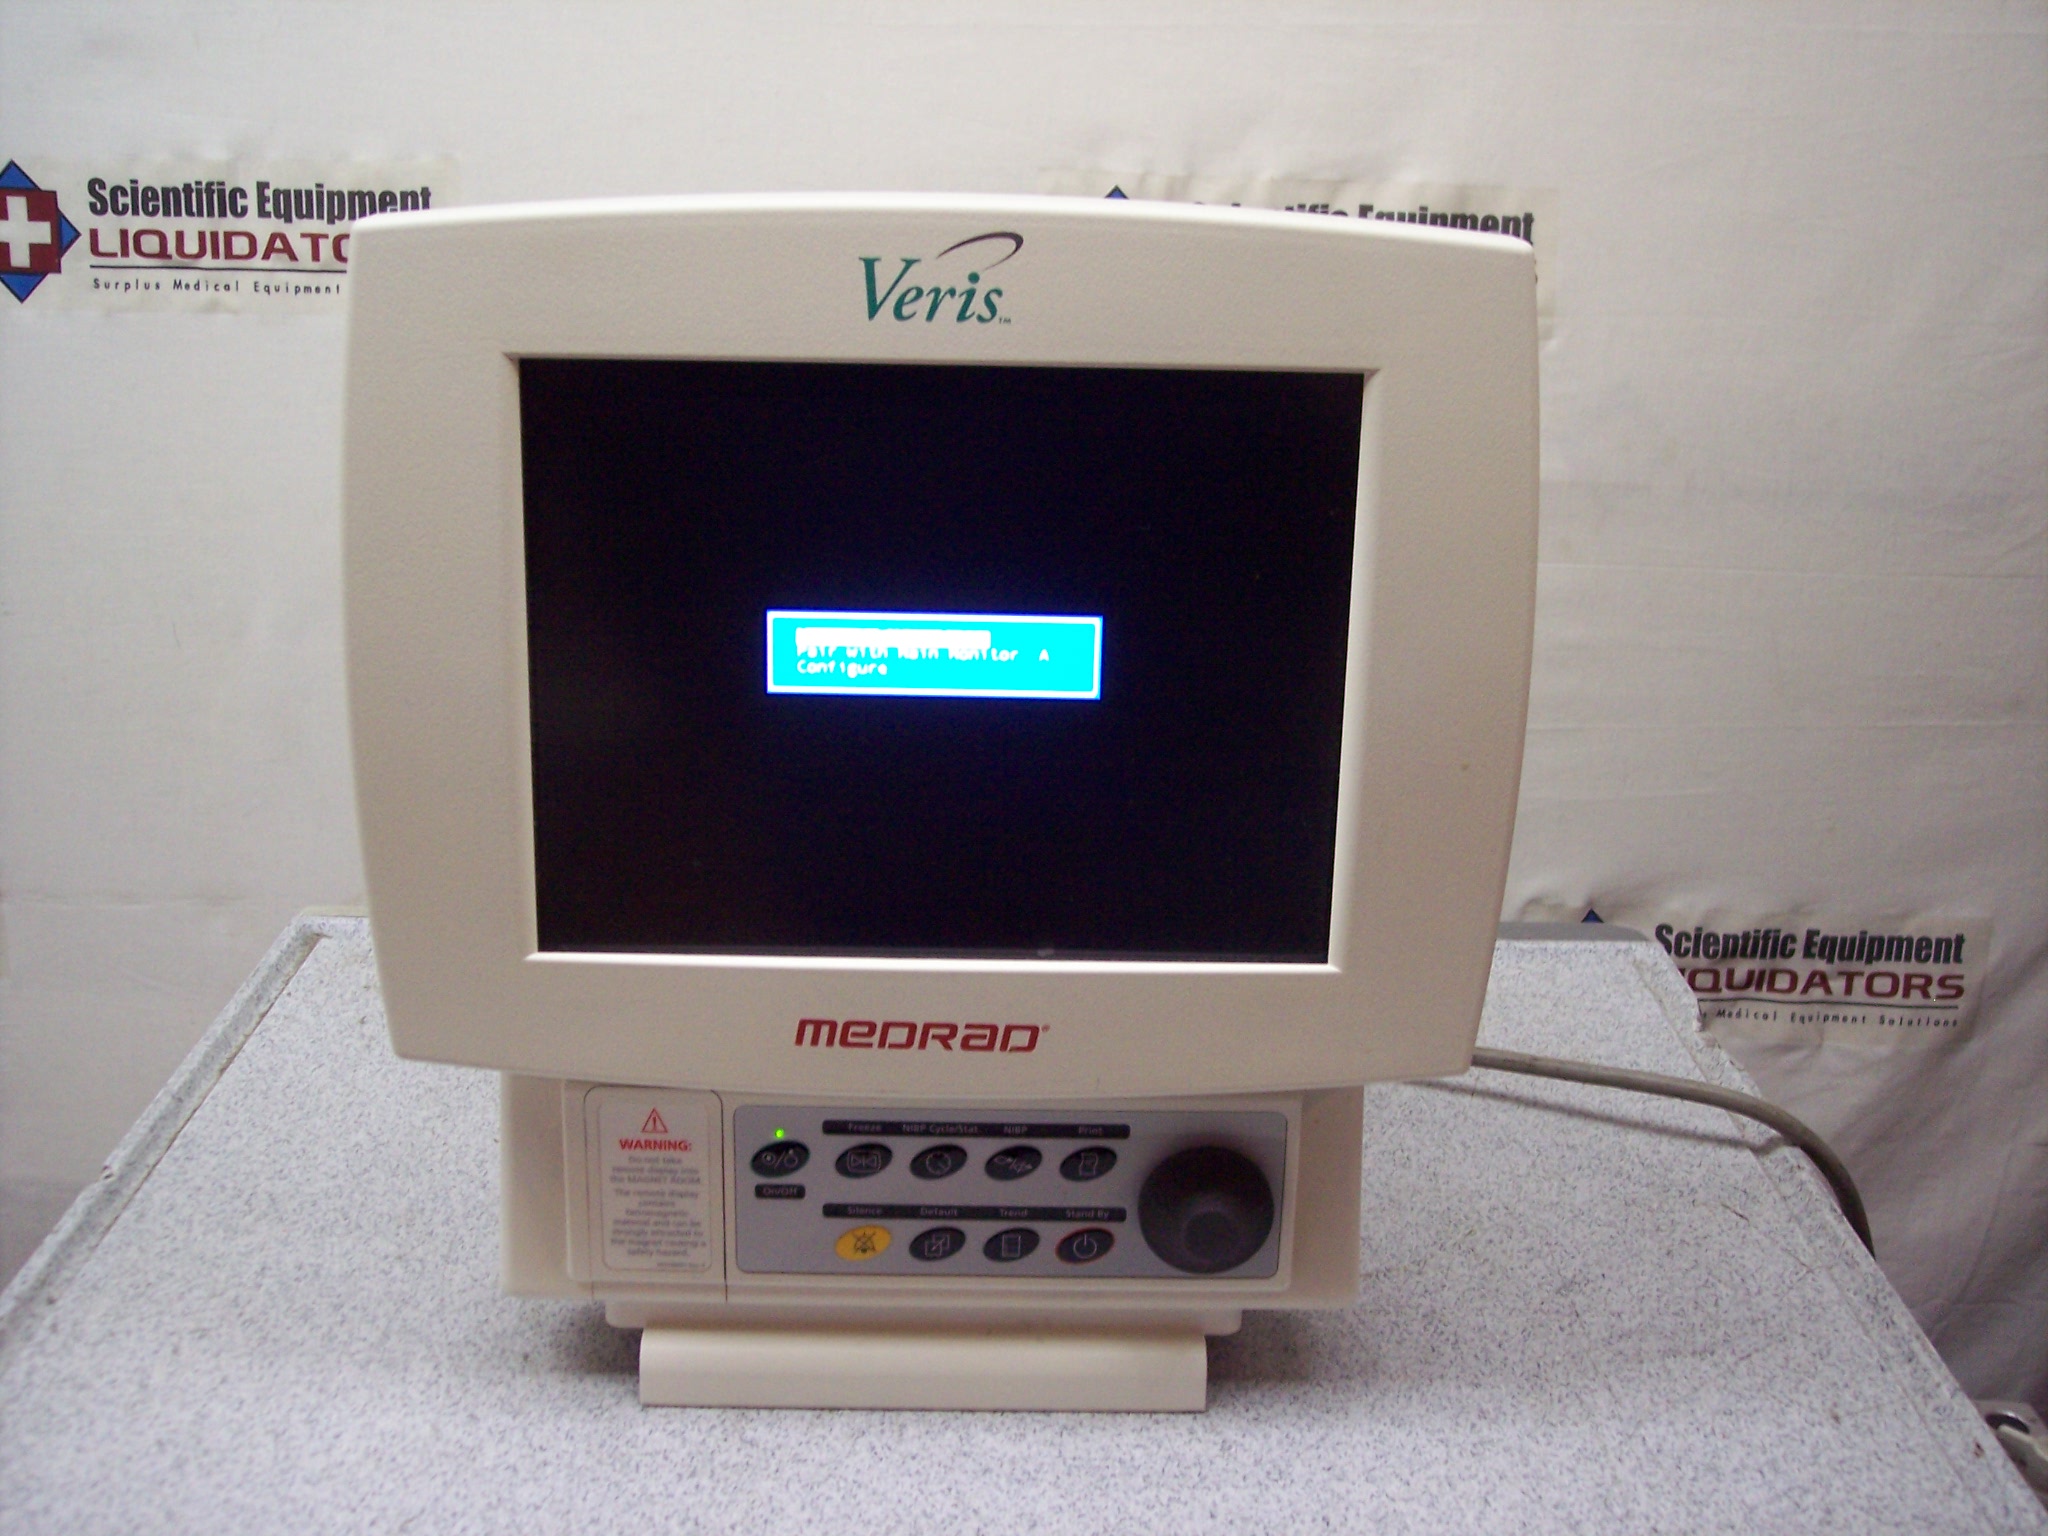 Medrad Veris 8600 Vital Signs Monitor